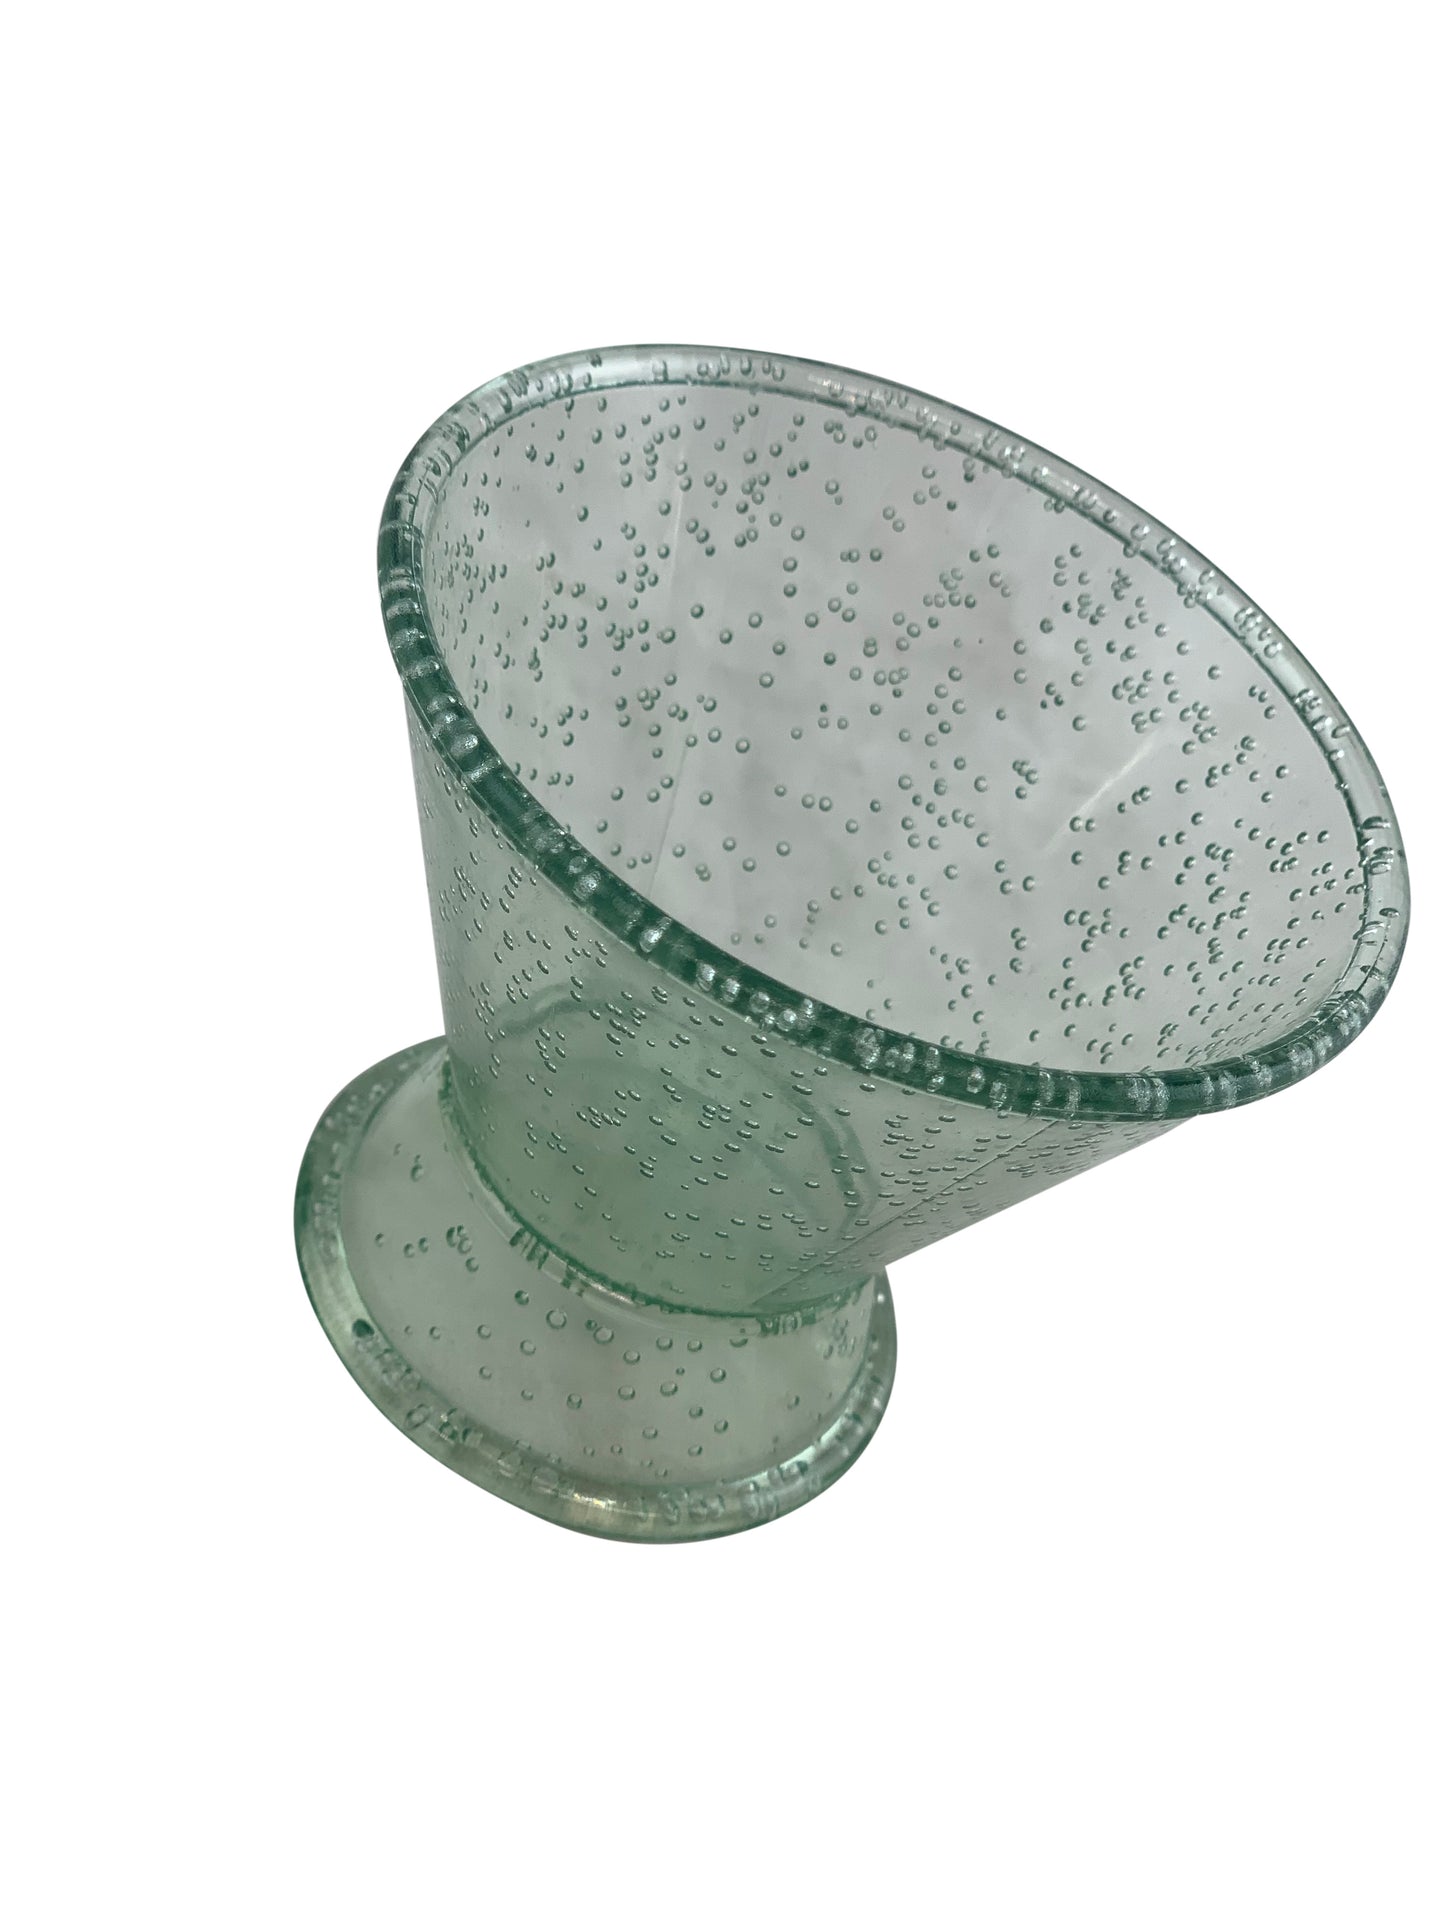 Green Round Short Speckled Drinking Vessel